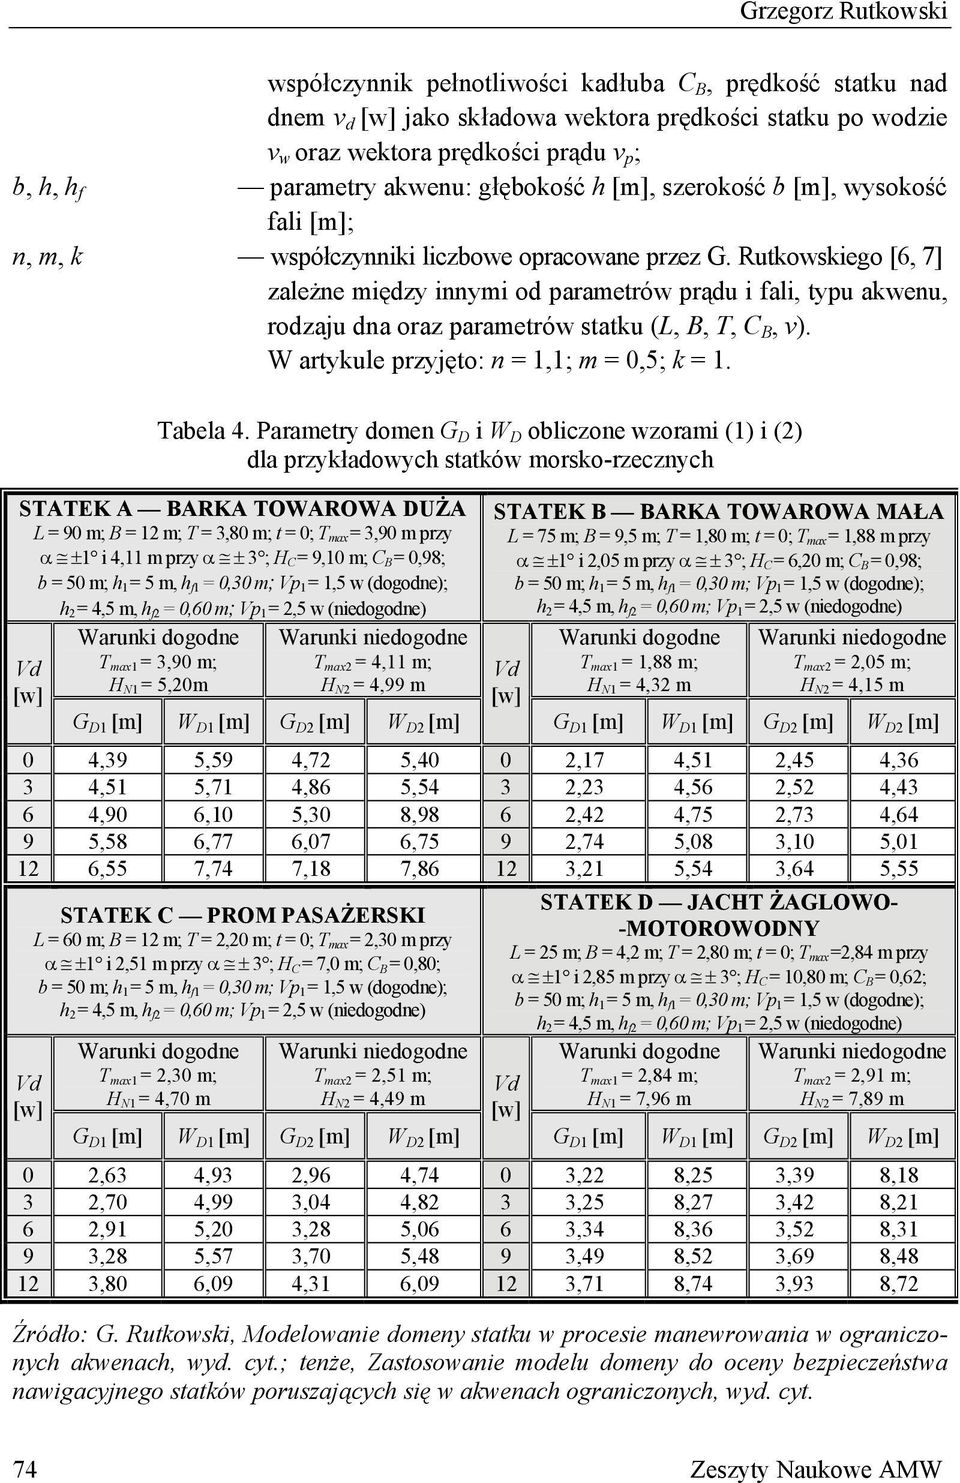 Rutkowskiego [6, 7] zależne między innymi od parametrów prądu i fali, typu akwenu, rodzaju dna oraz parametrów statku (L, B, T, C B, v). W artykule przyjęto: n = 1,1; m = 0,5; k = 1. Tabela 4.